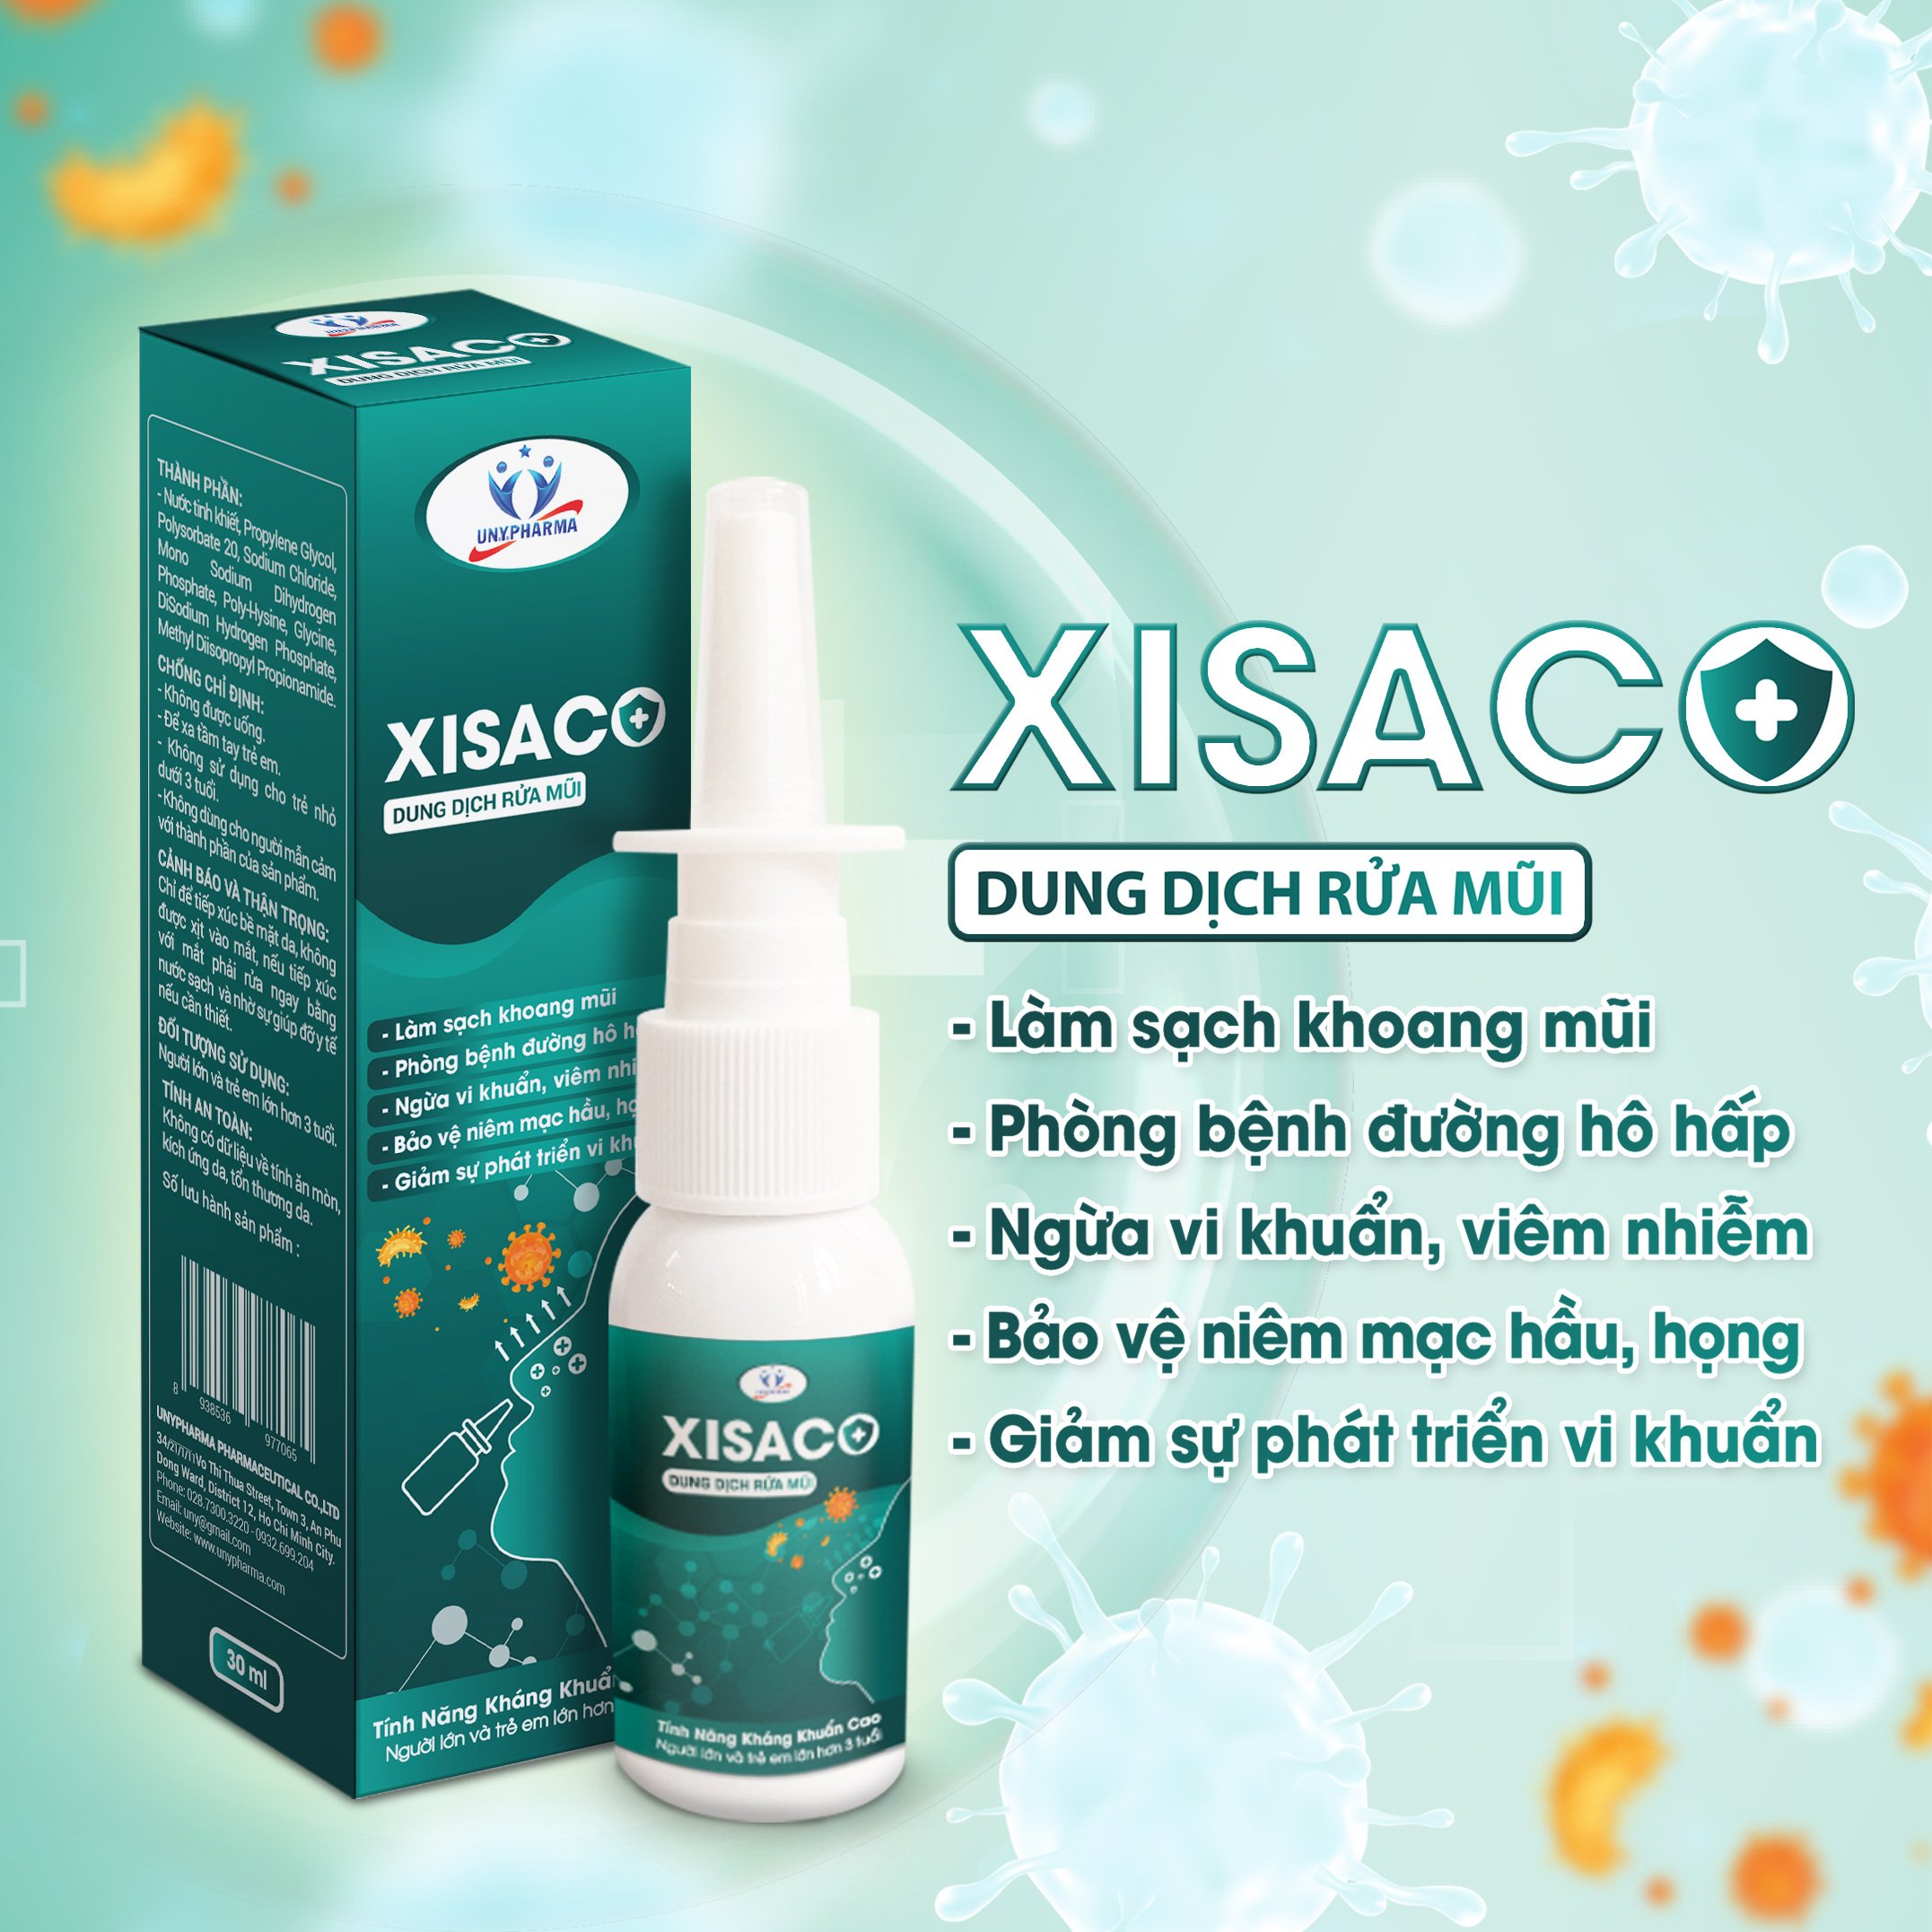 COMBO PHÒNG DỊCH TRẺ EM - Dung dịch rửa mũi &amp; xịt họng XISACO bộ 2 sản phẩm xịt kháng khuẩn bảo về đường hô hấp cho trẻ em trong mùa dịch